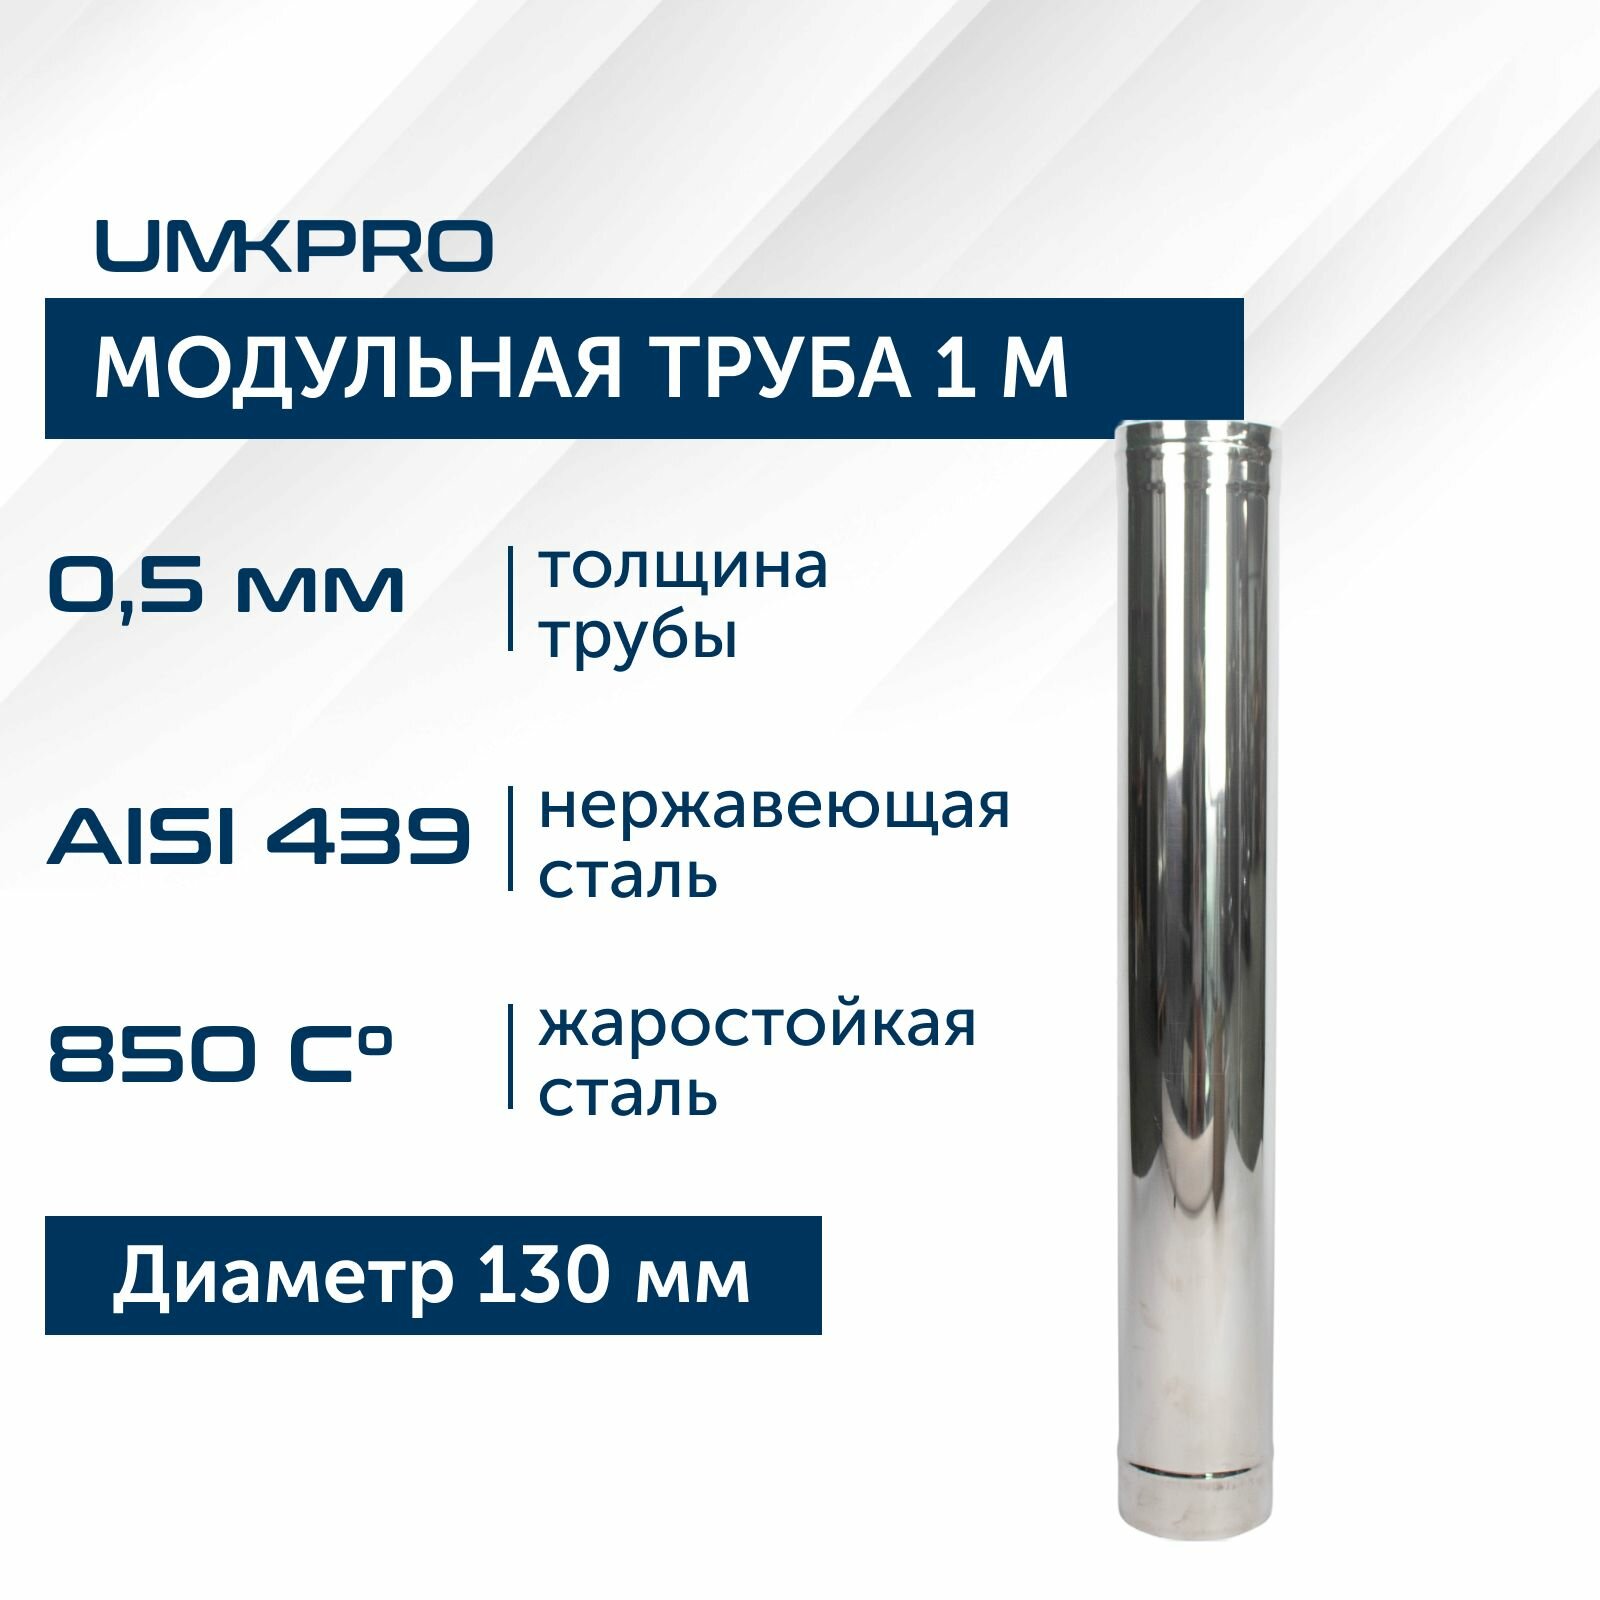 Труба модульная для дымохода 1 м UMKPRO, D 130, AISI 439/0,5мм